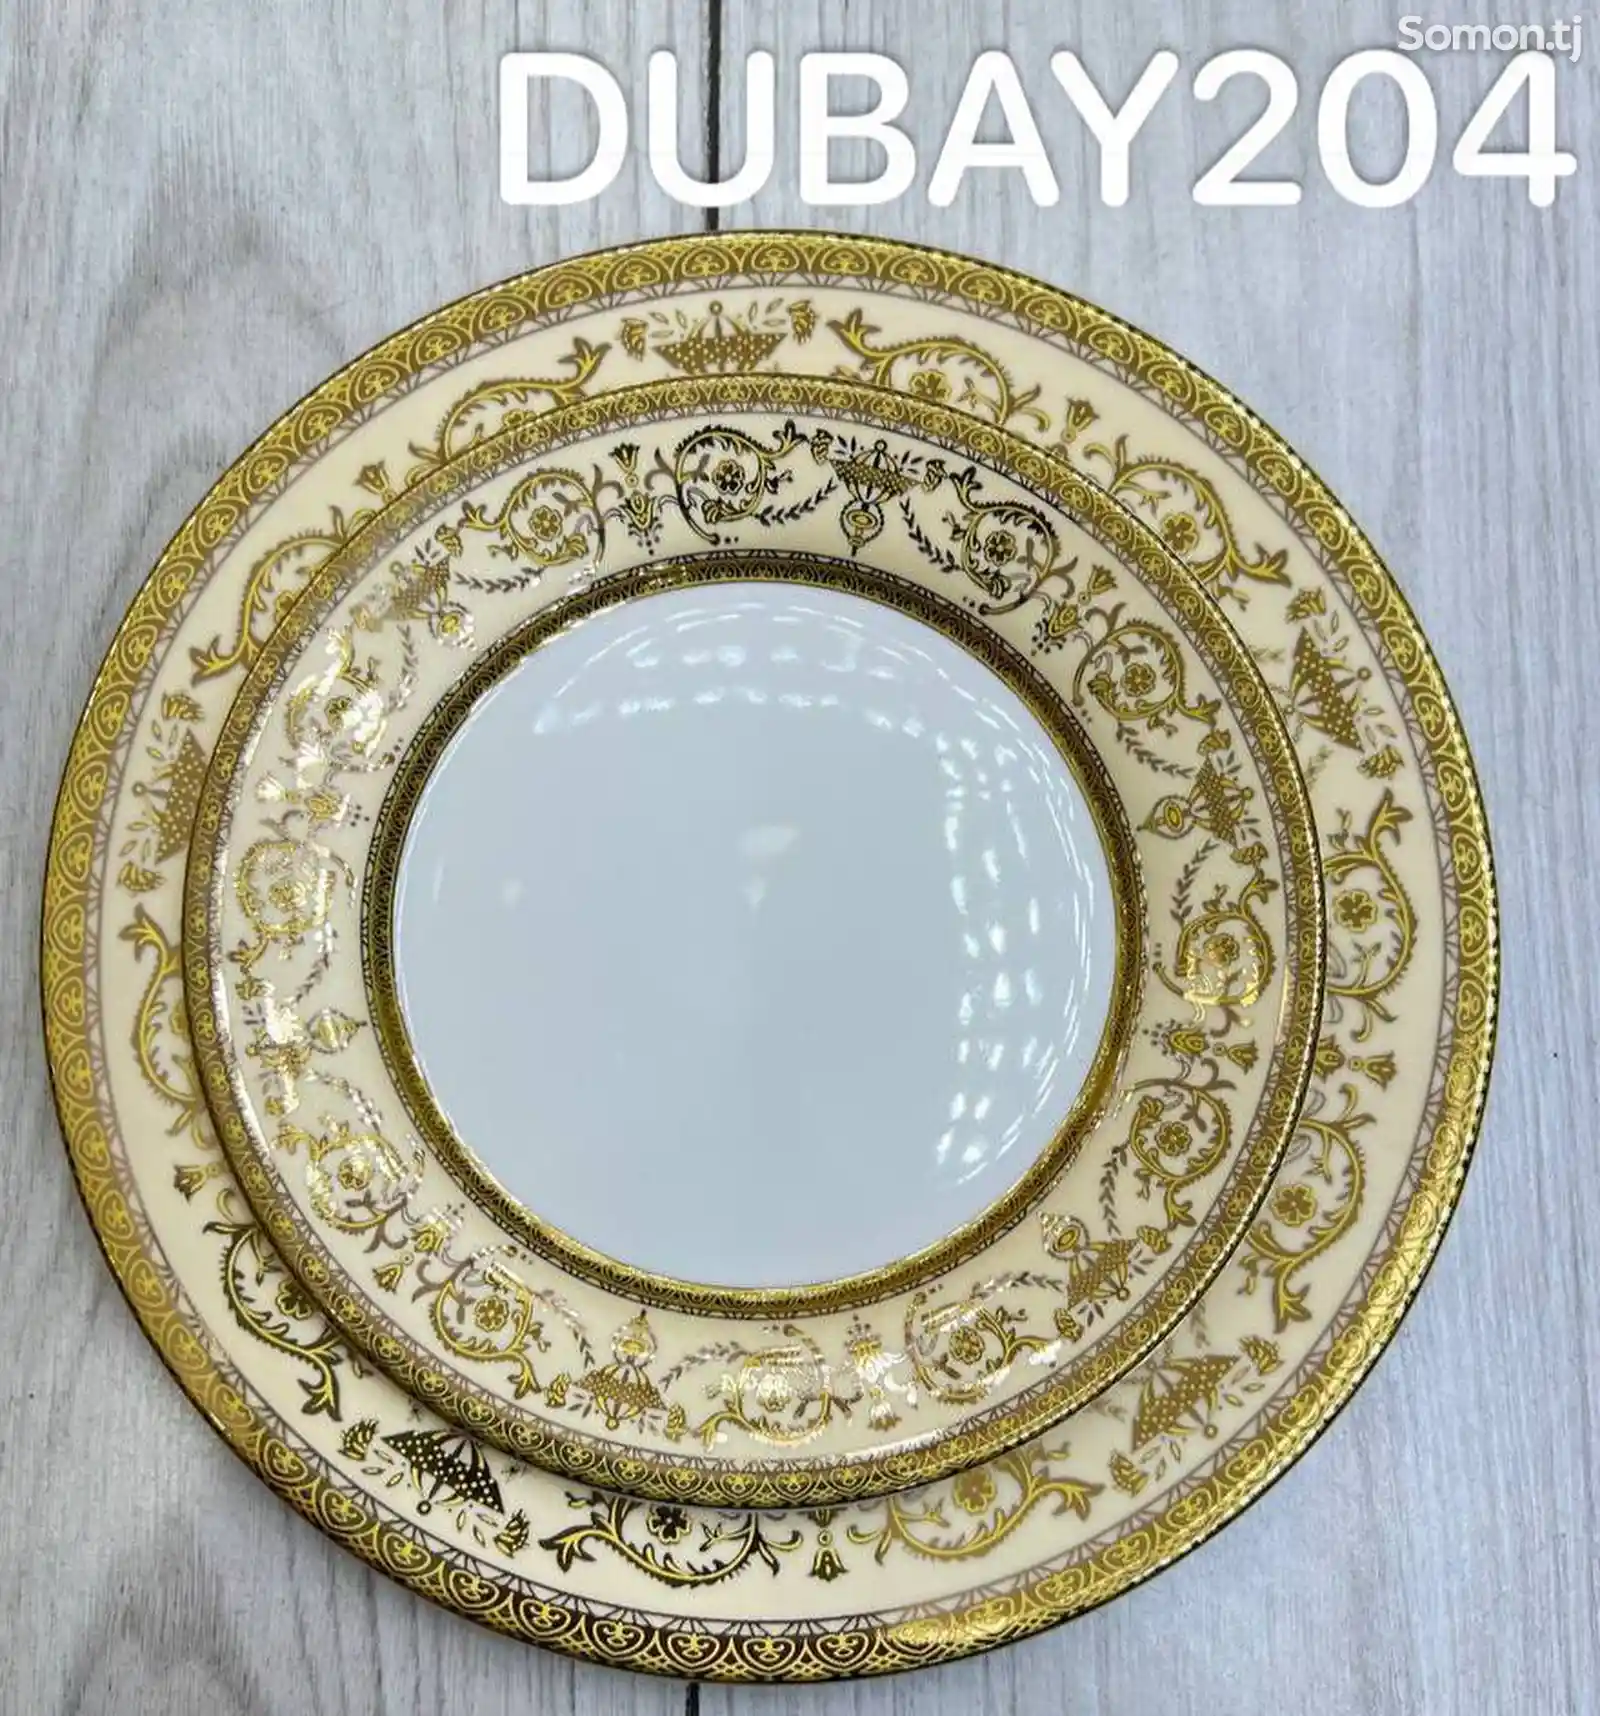 Набор посуды Dubay-204A комплект 6-7